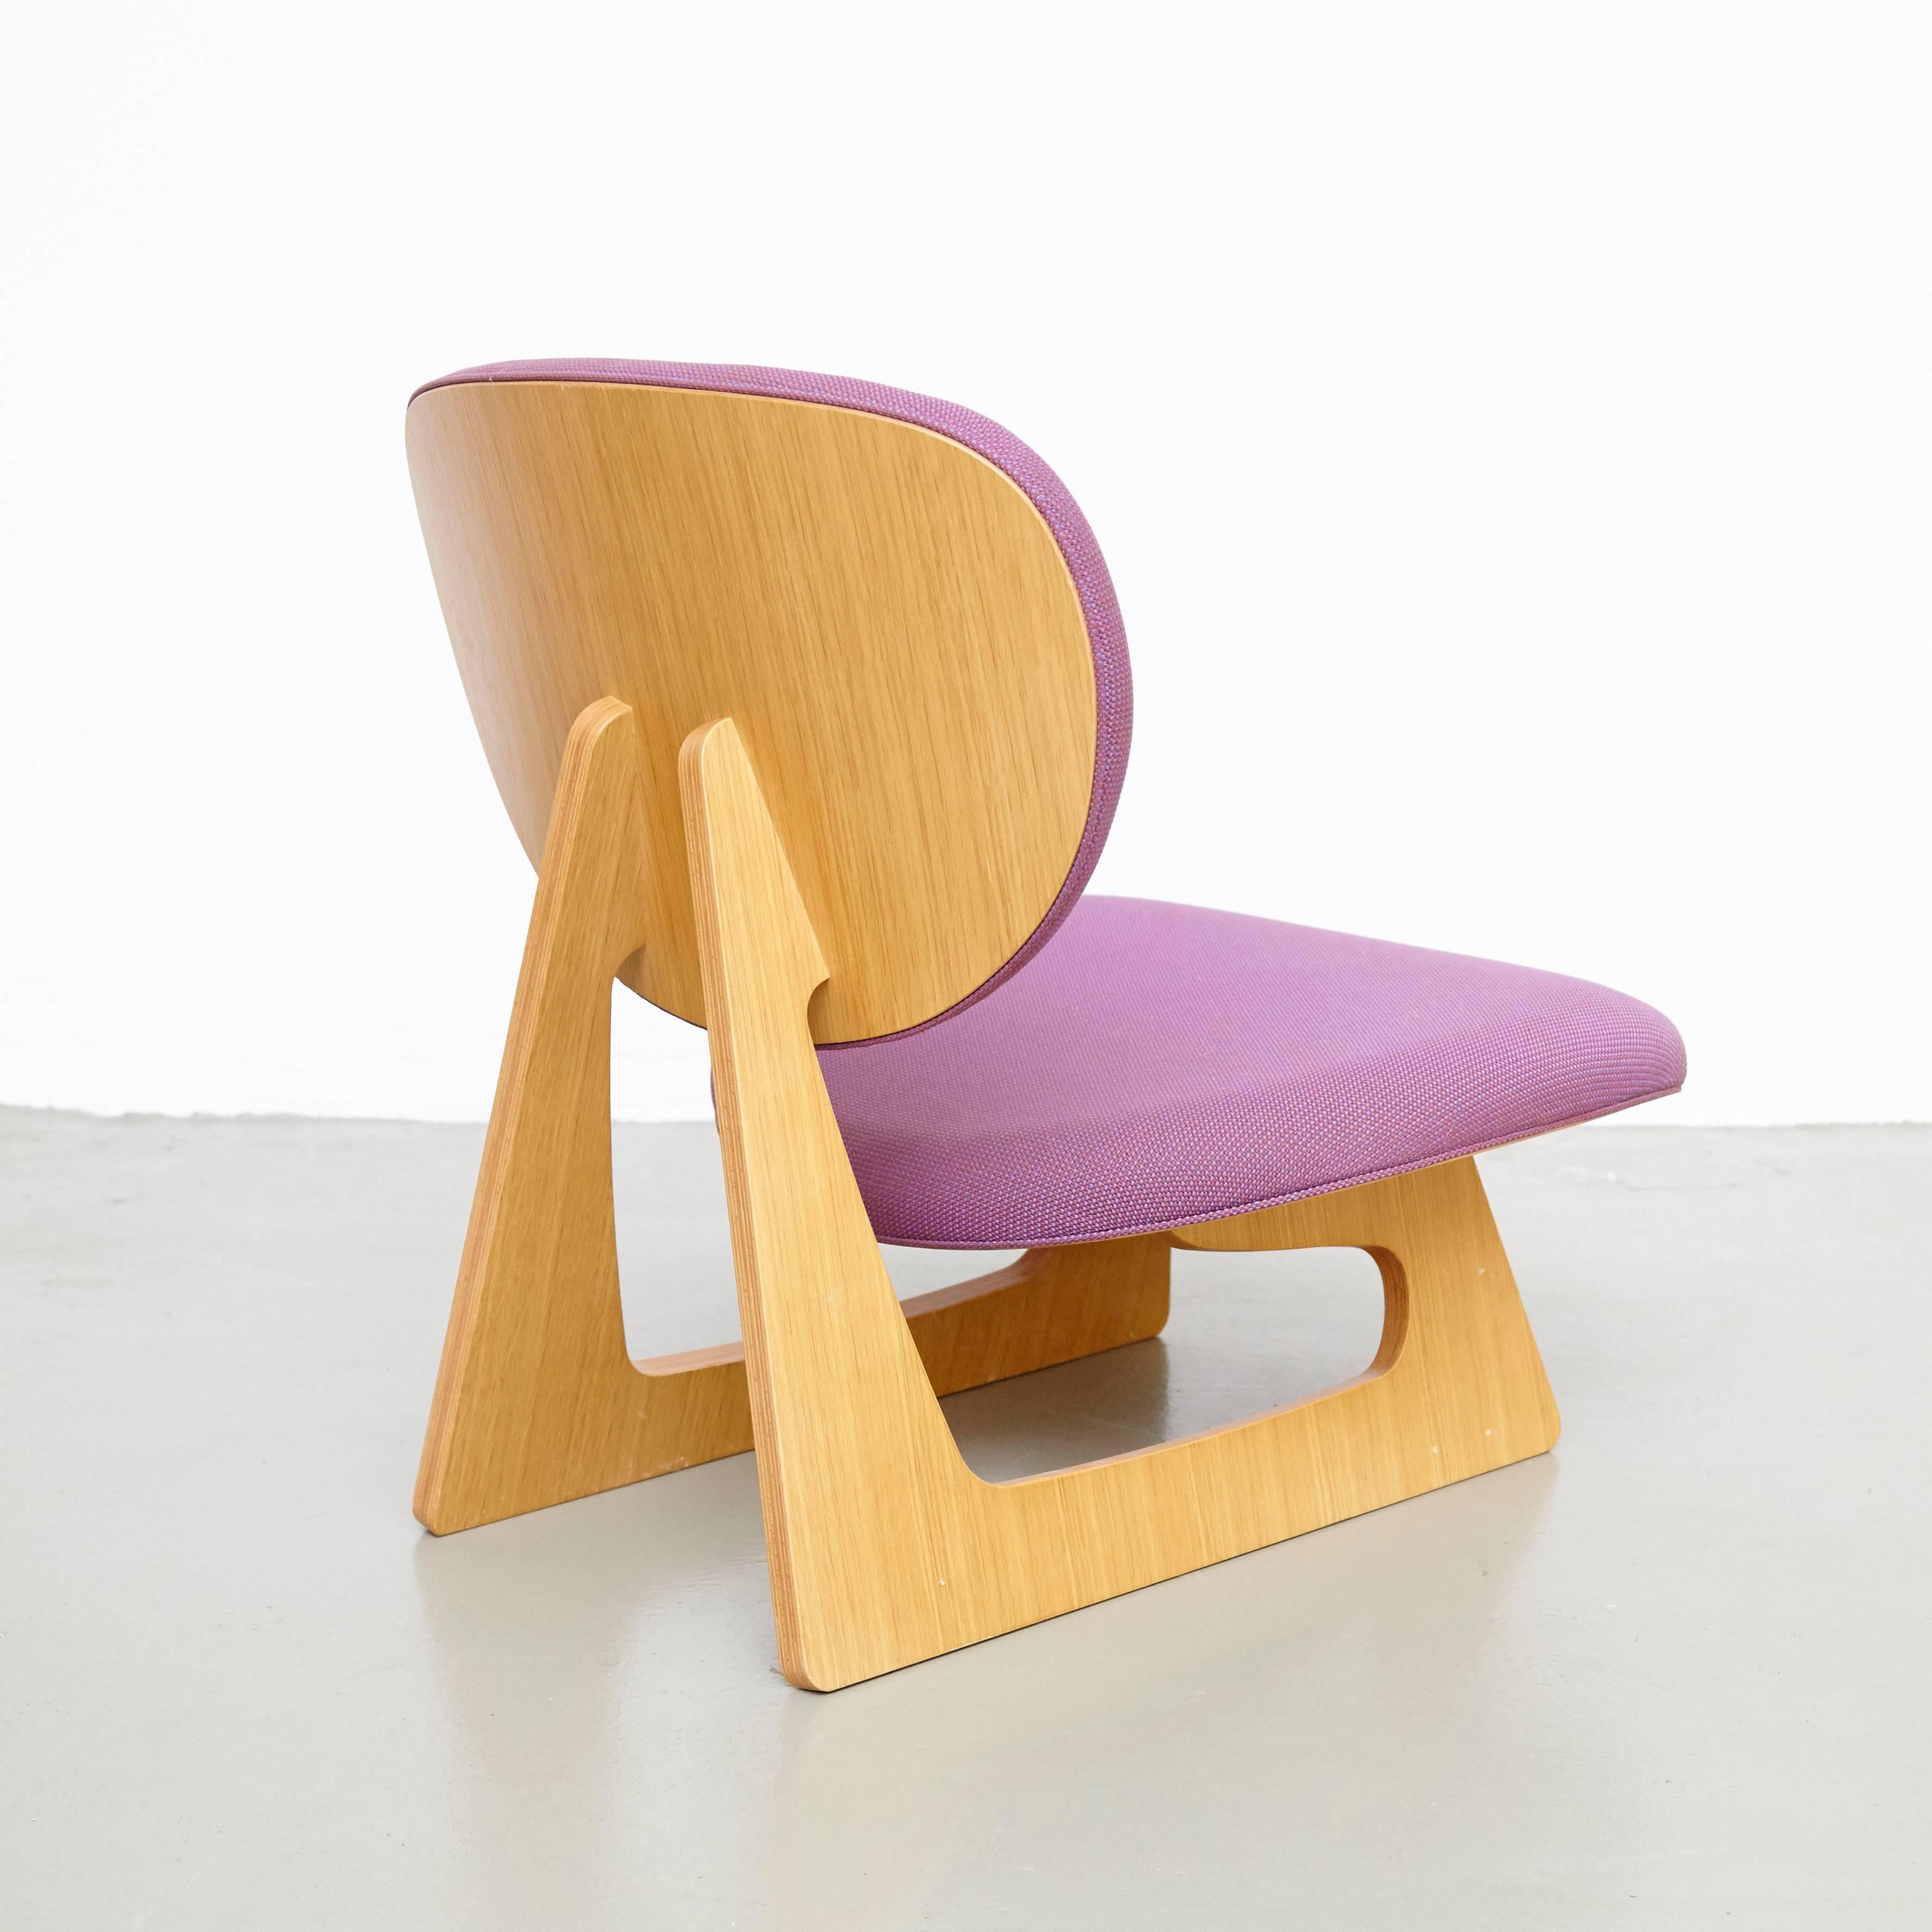 Wir stellen den exquisiten Junzo Sakakura Lounge Chair vor, ein fesselndes Stück Design aus den 1980er Jahren, das von dem bekannten japanischen Architekten und Designer Junzo Sakakura entworfen wurde. Dieser von Tendo in Japan hergestellte